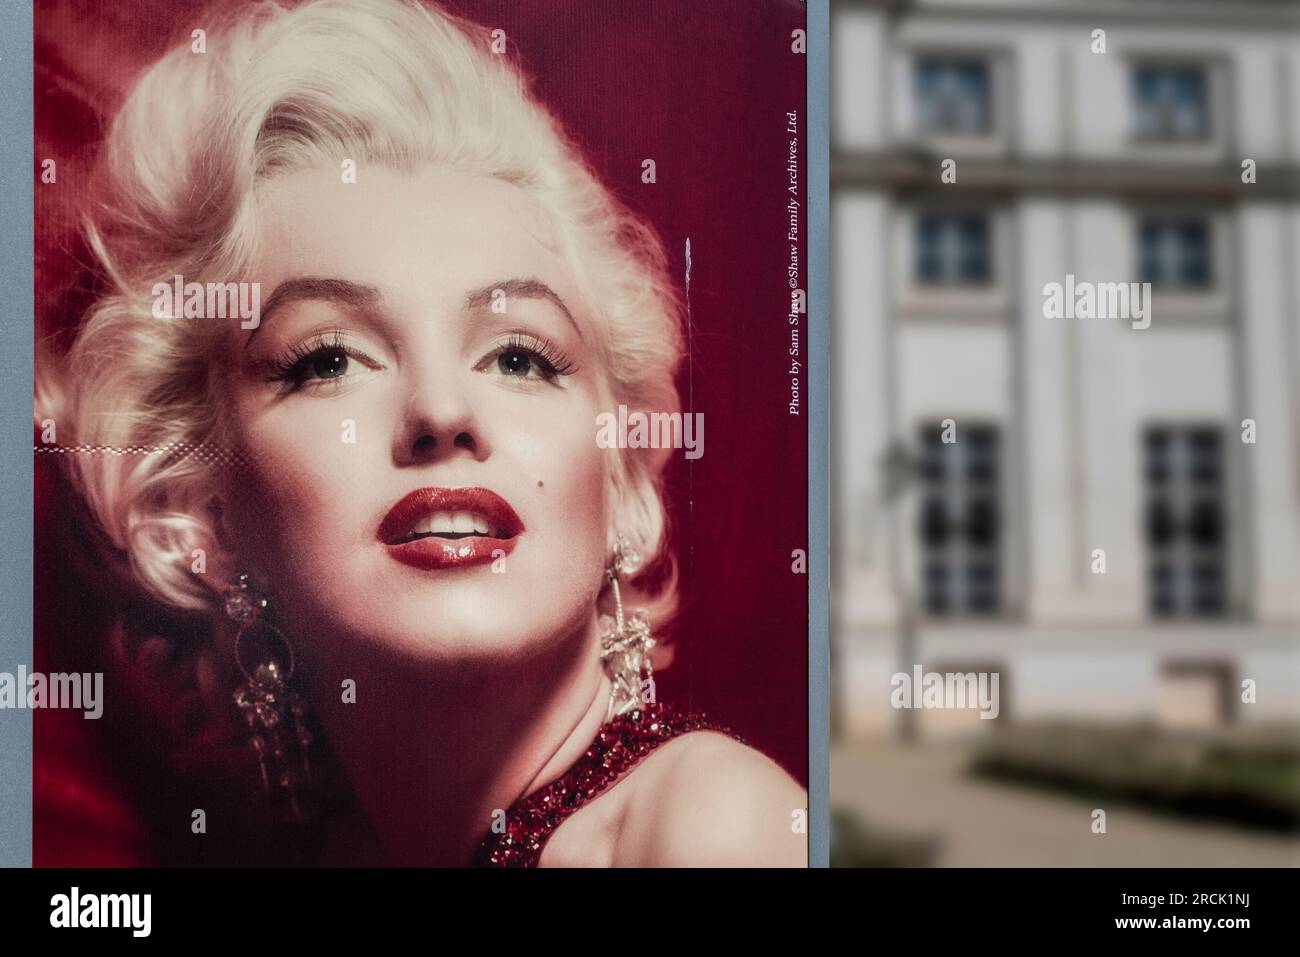 Photographie rapprochée de Marilyn Monroe, célèbre blonde et belle actrice. Affiche lors d'une exposition photographique. Banque D'Images